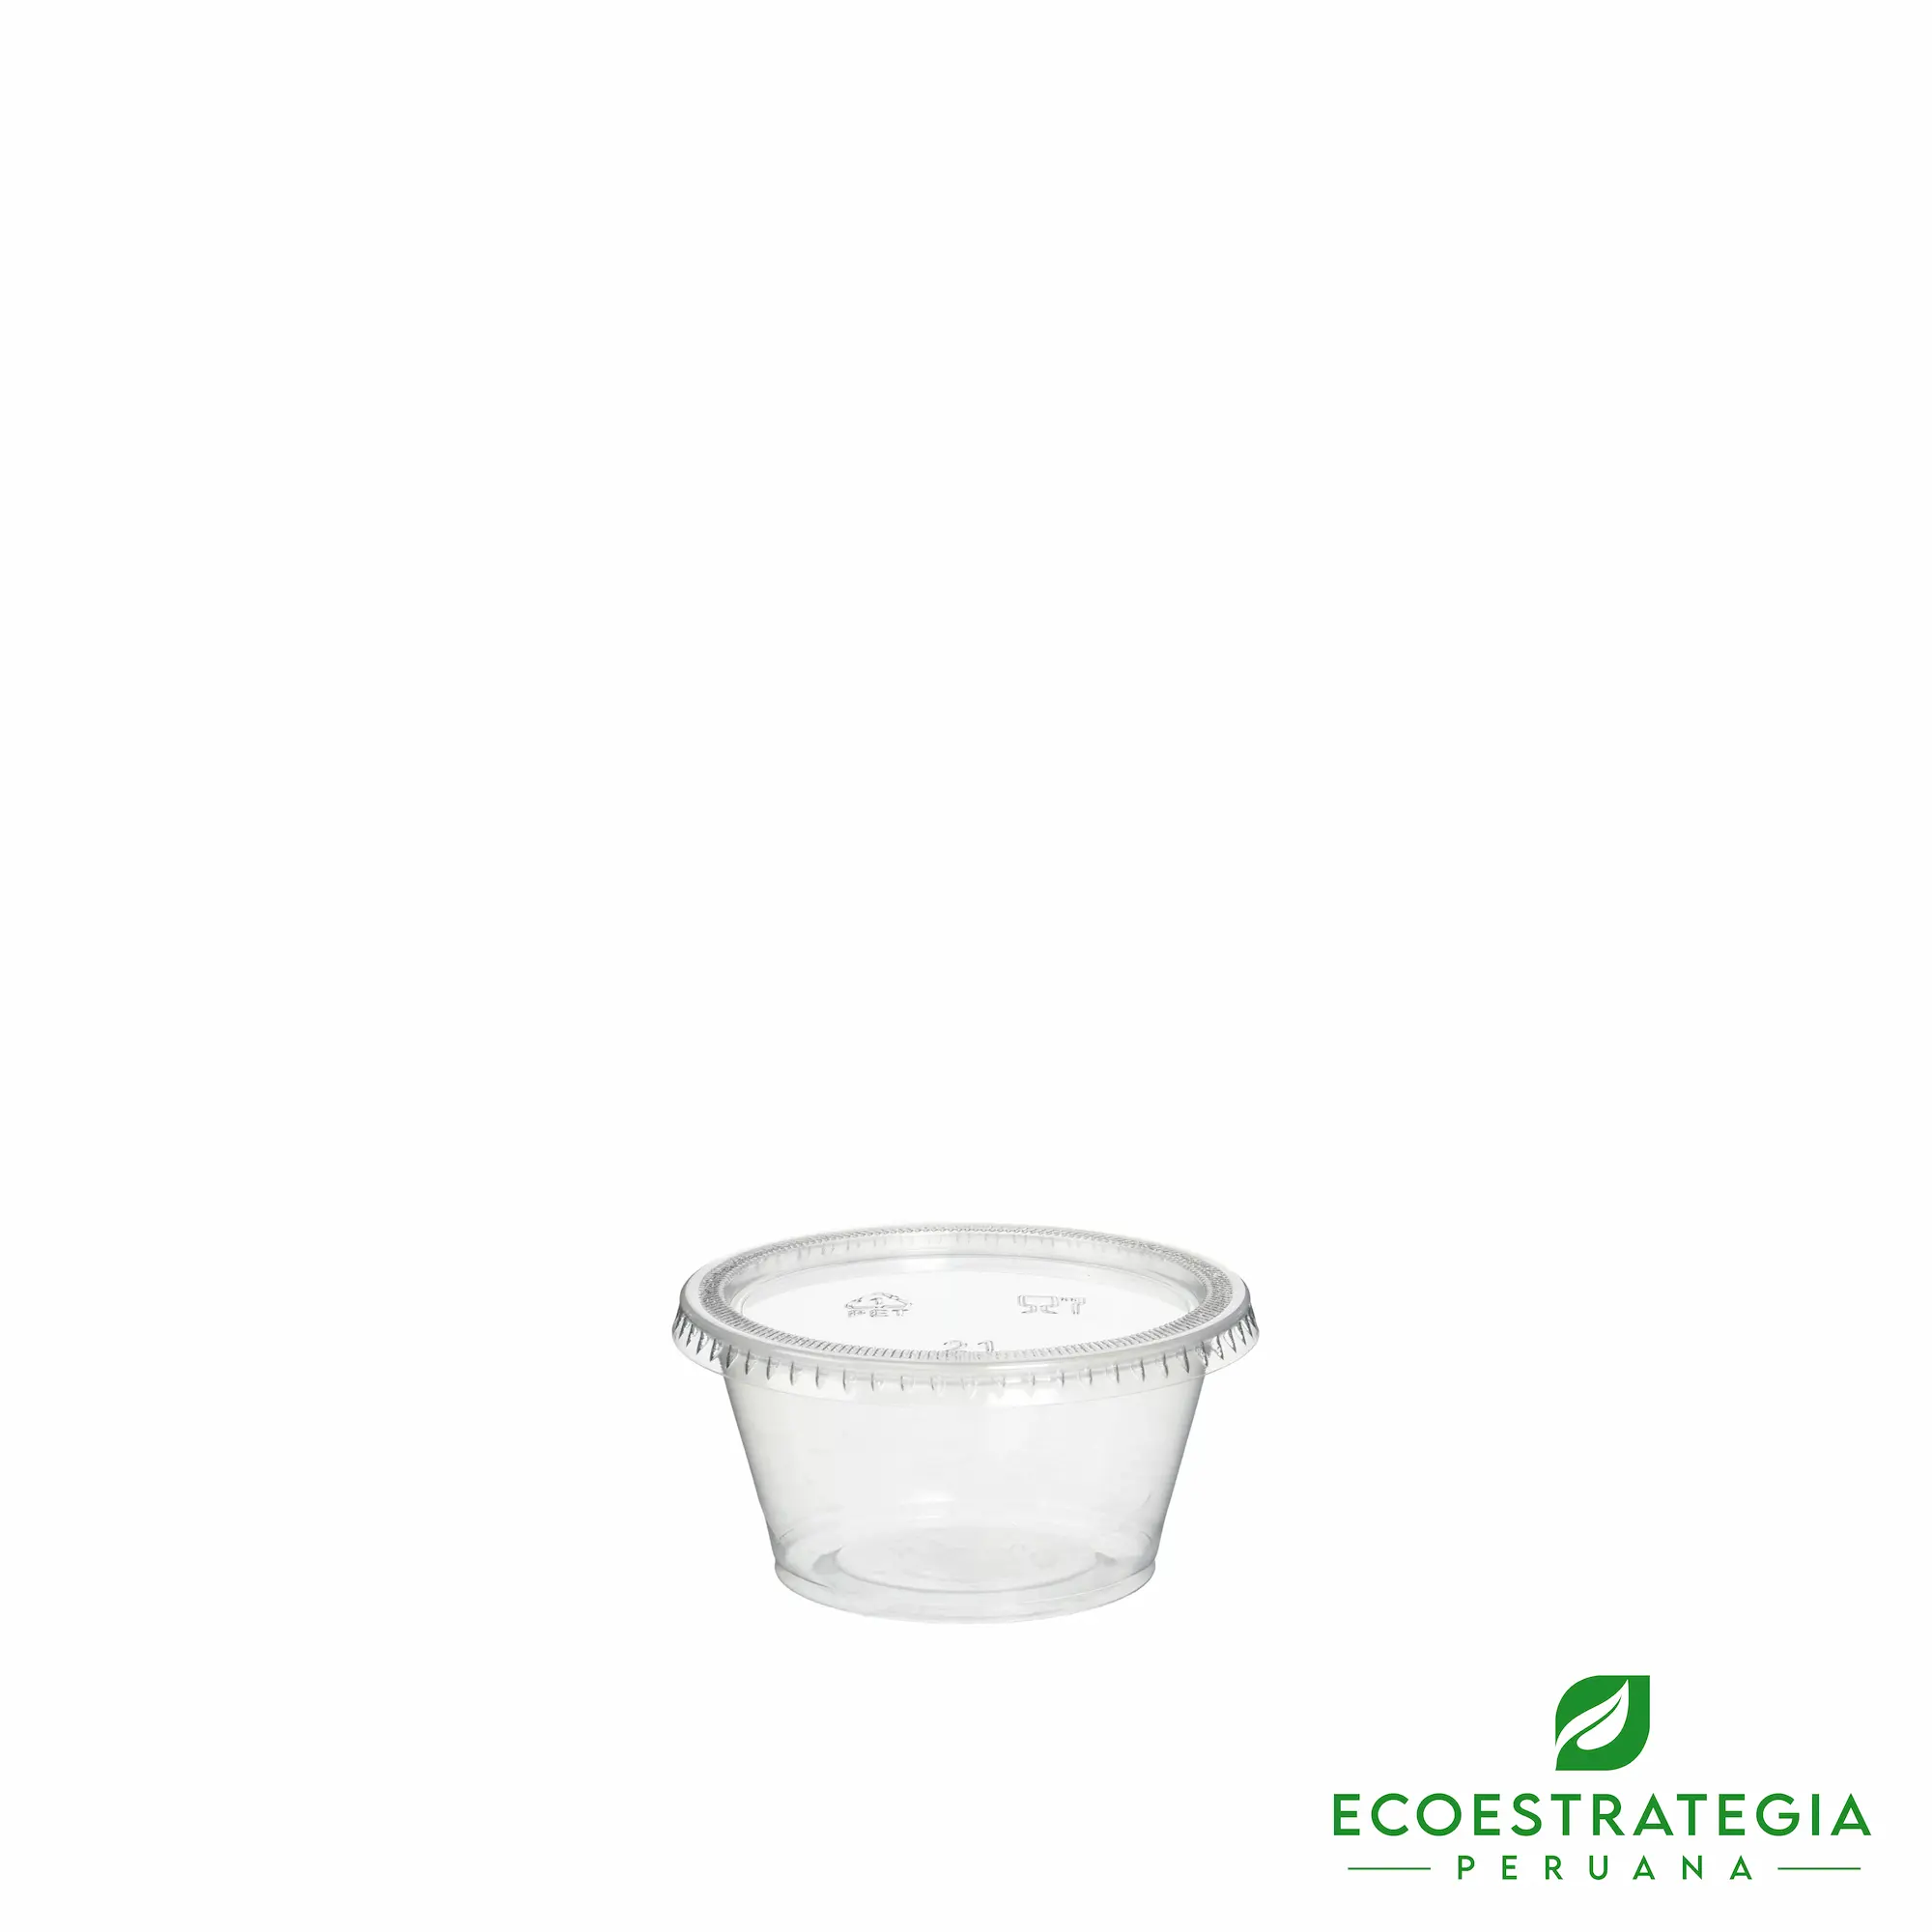 Este envase para cremas de 2oz, es un producto de material descartable hecho a base de plástico virgen. Cotiza tus ajiceros, salseros y pirotines biodegradables